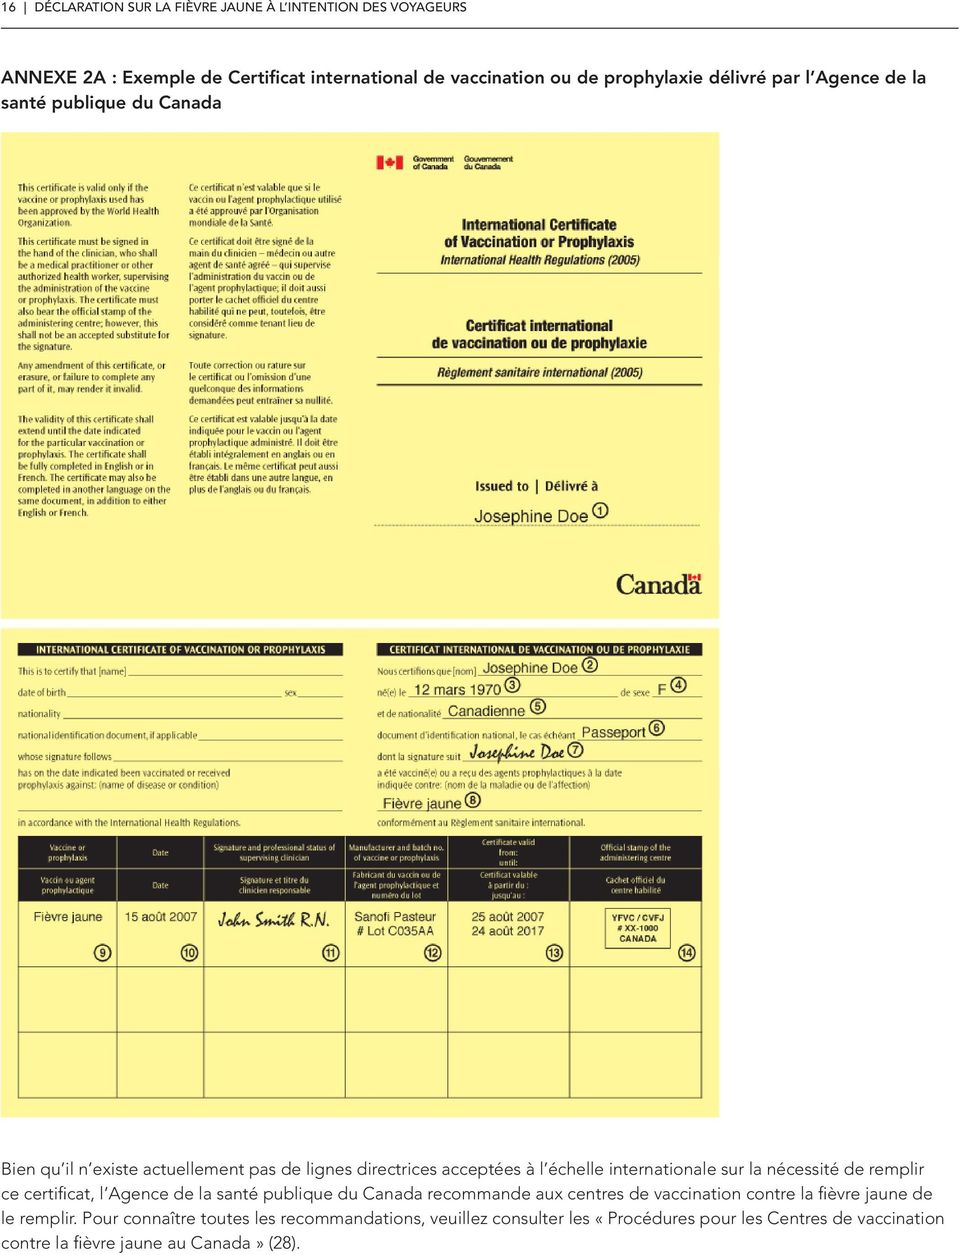 sur la nécessité de remplir ce certificat, l Agence de la santé publique du Canada recommande aux centres de vaccination contre la fièvre jaune de le